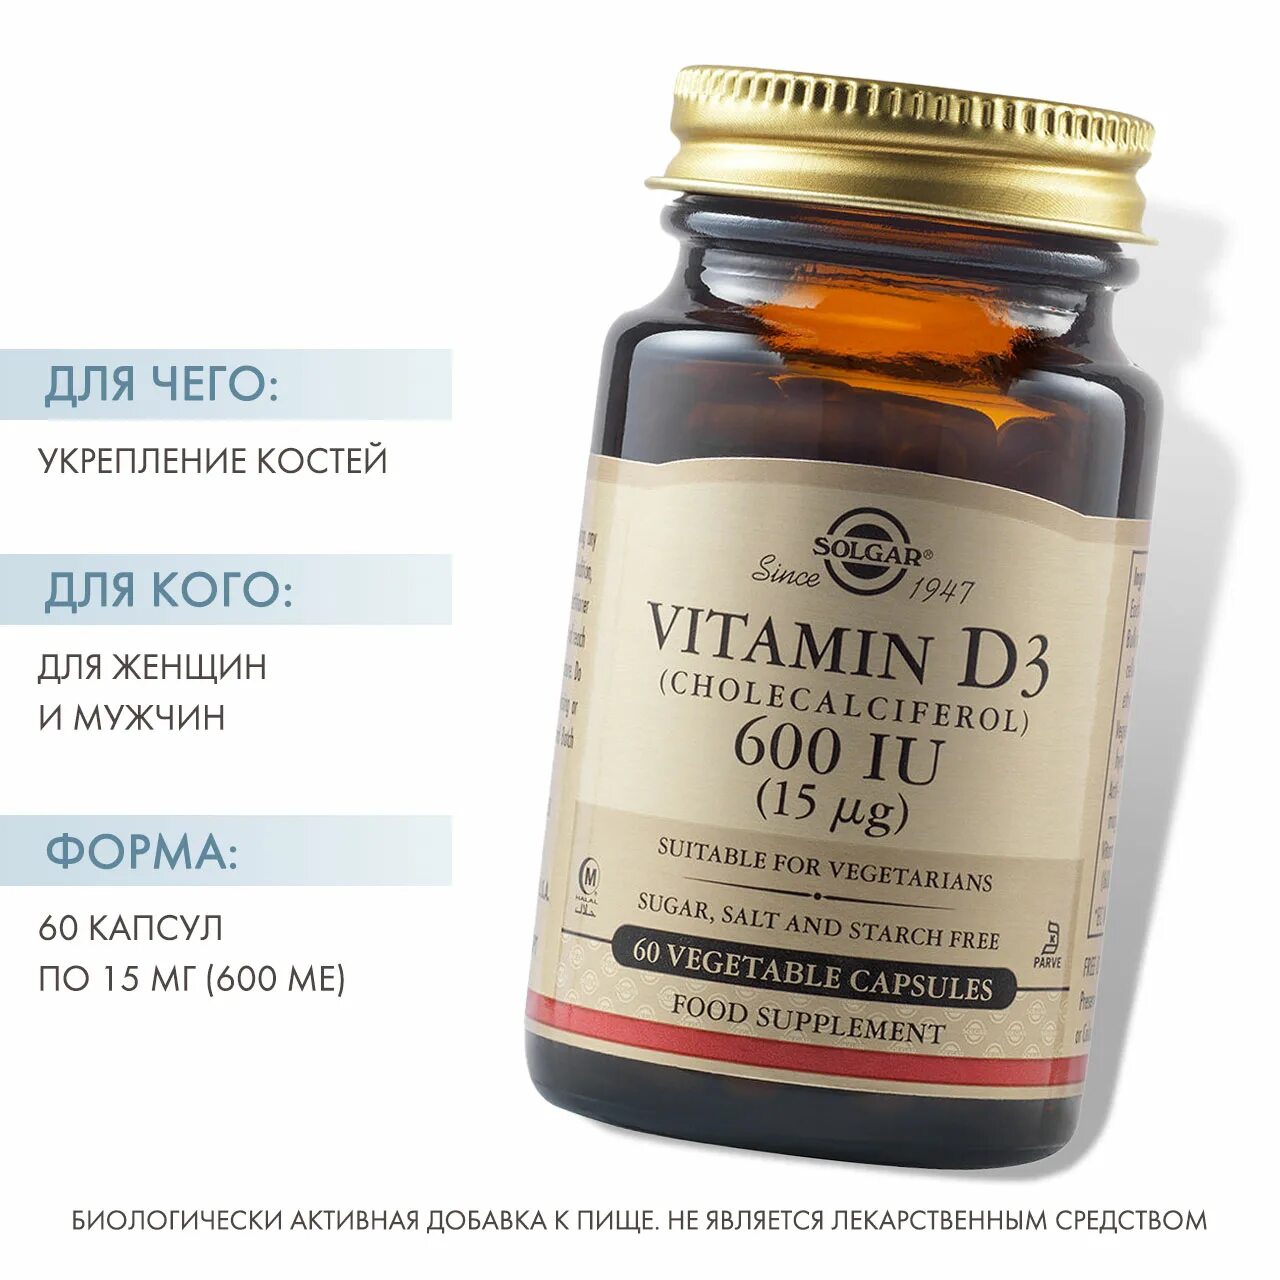 Капсулы solgar vitamin d3. Солгар витамин д 600. Solgar Vitamin d3 600 ме. Солгар витамины для суставов и костей женщин после 60. Солгар витамины для мужчин.